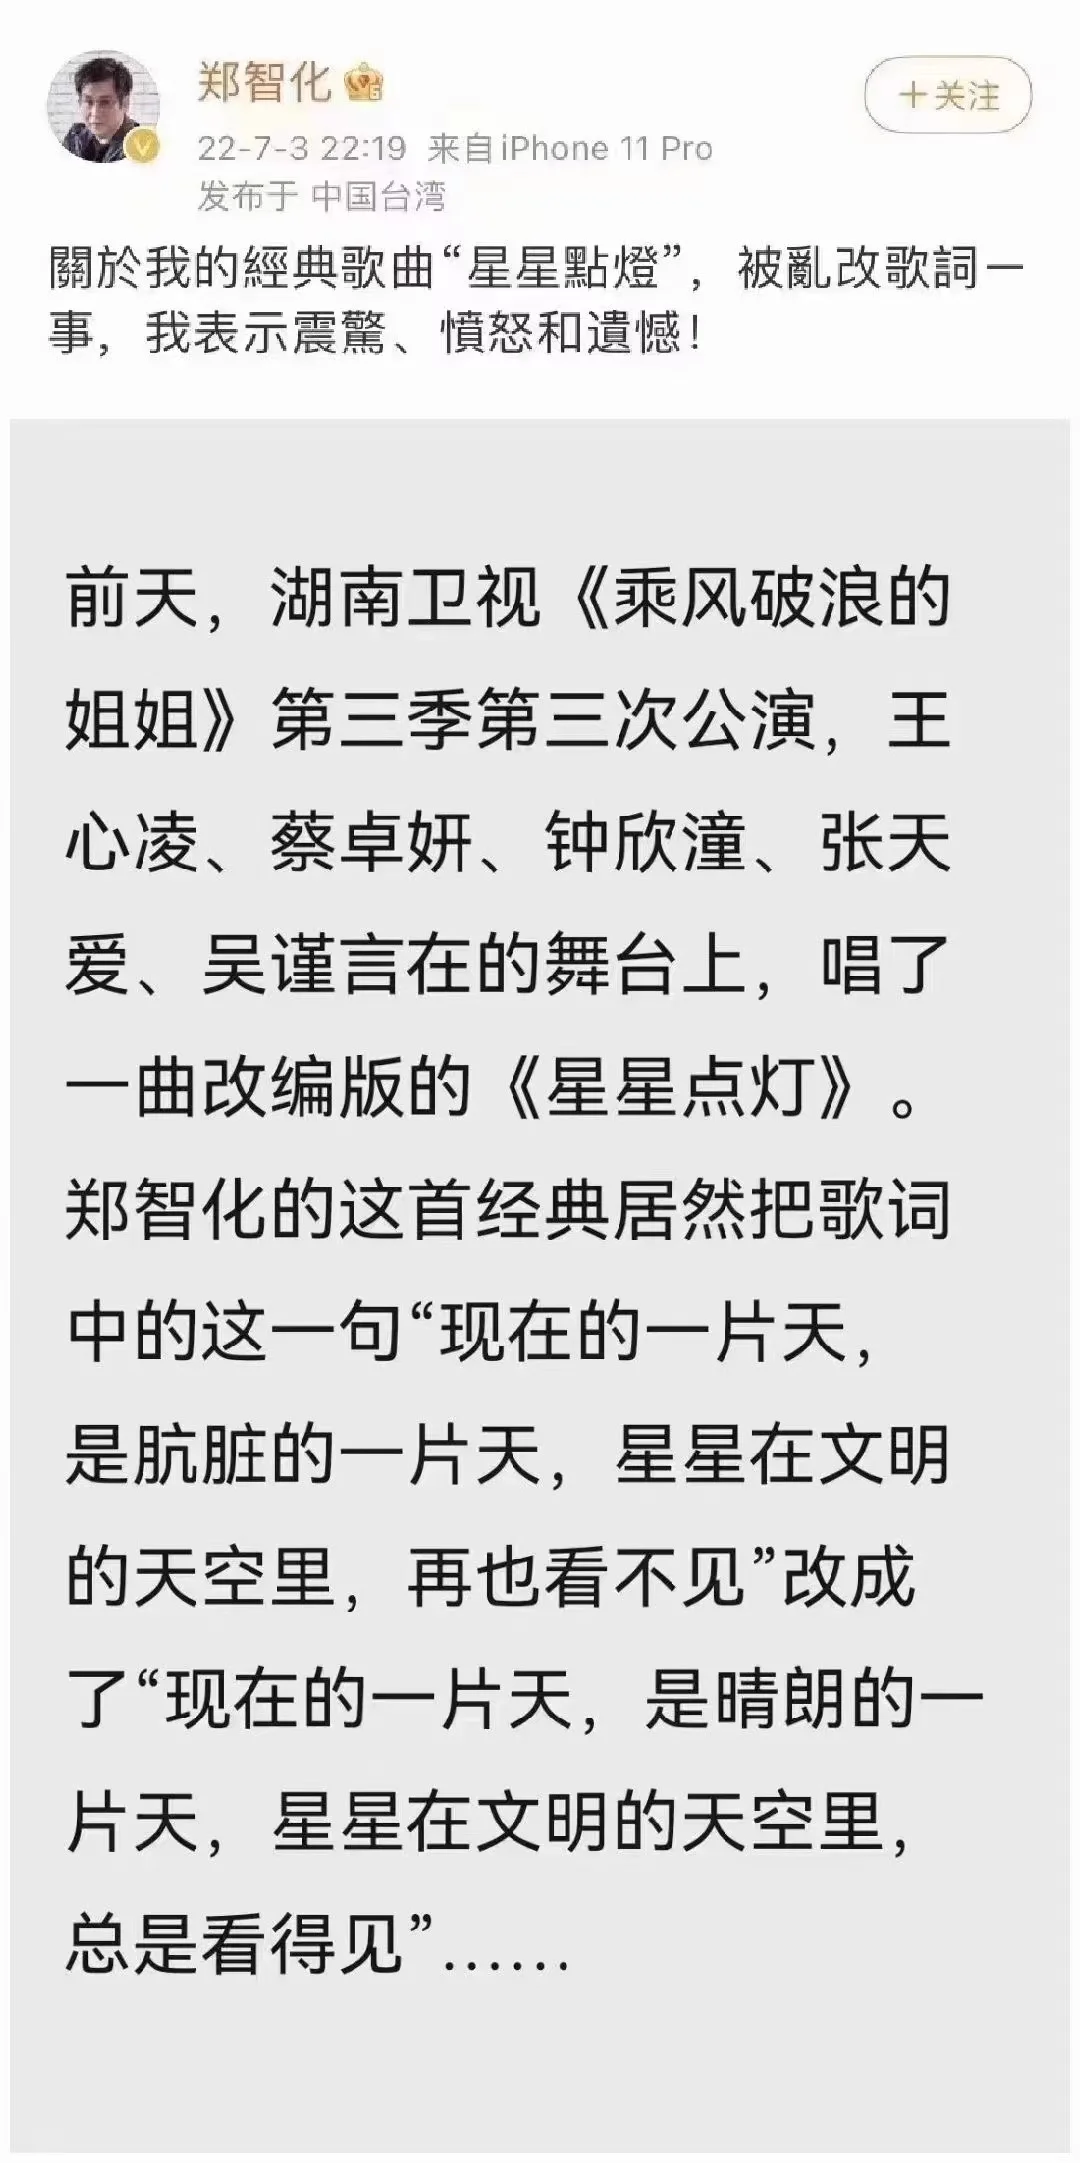 郑智化不满《浪姐》篡改《星星点灯》歌词 发文表示震惊、愤怒和遗憾